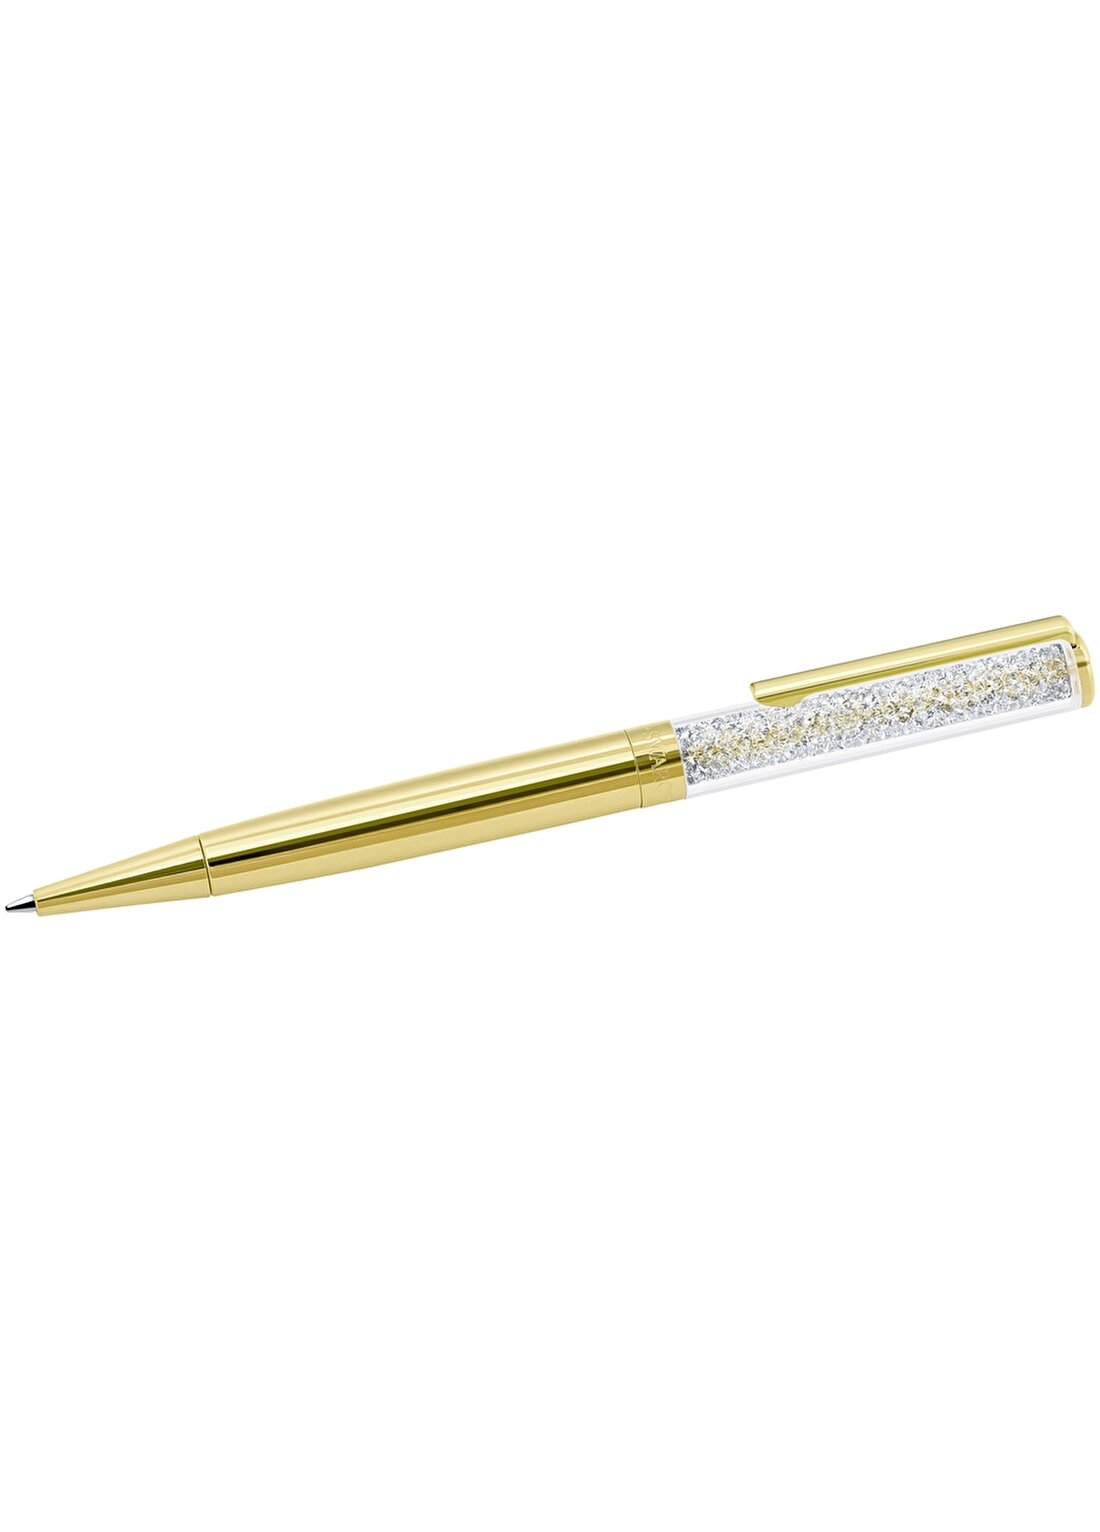 Swarovski Crystalline Tükenmez Kalem Altın Kaplama Takı Seti